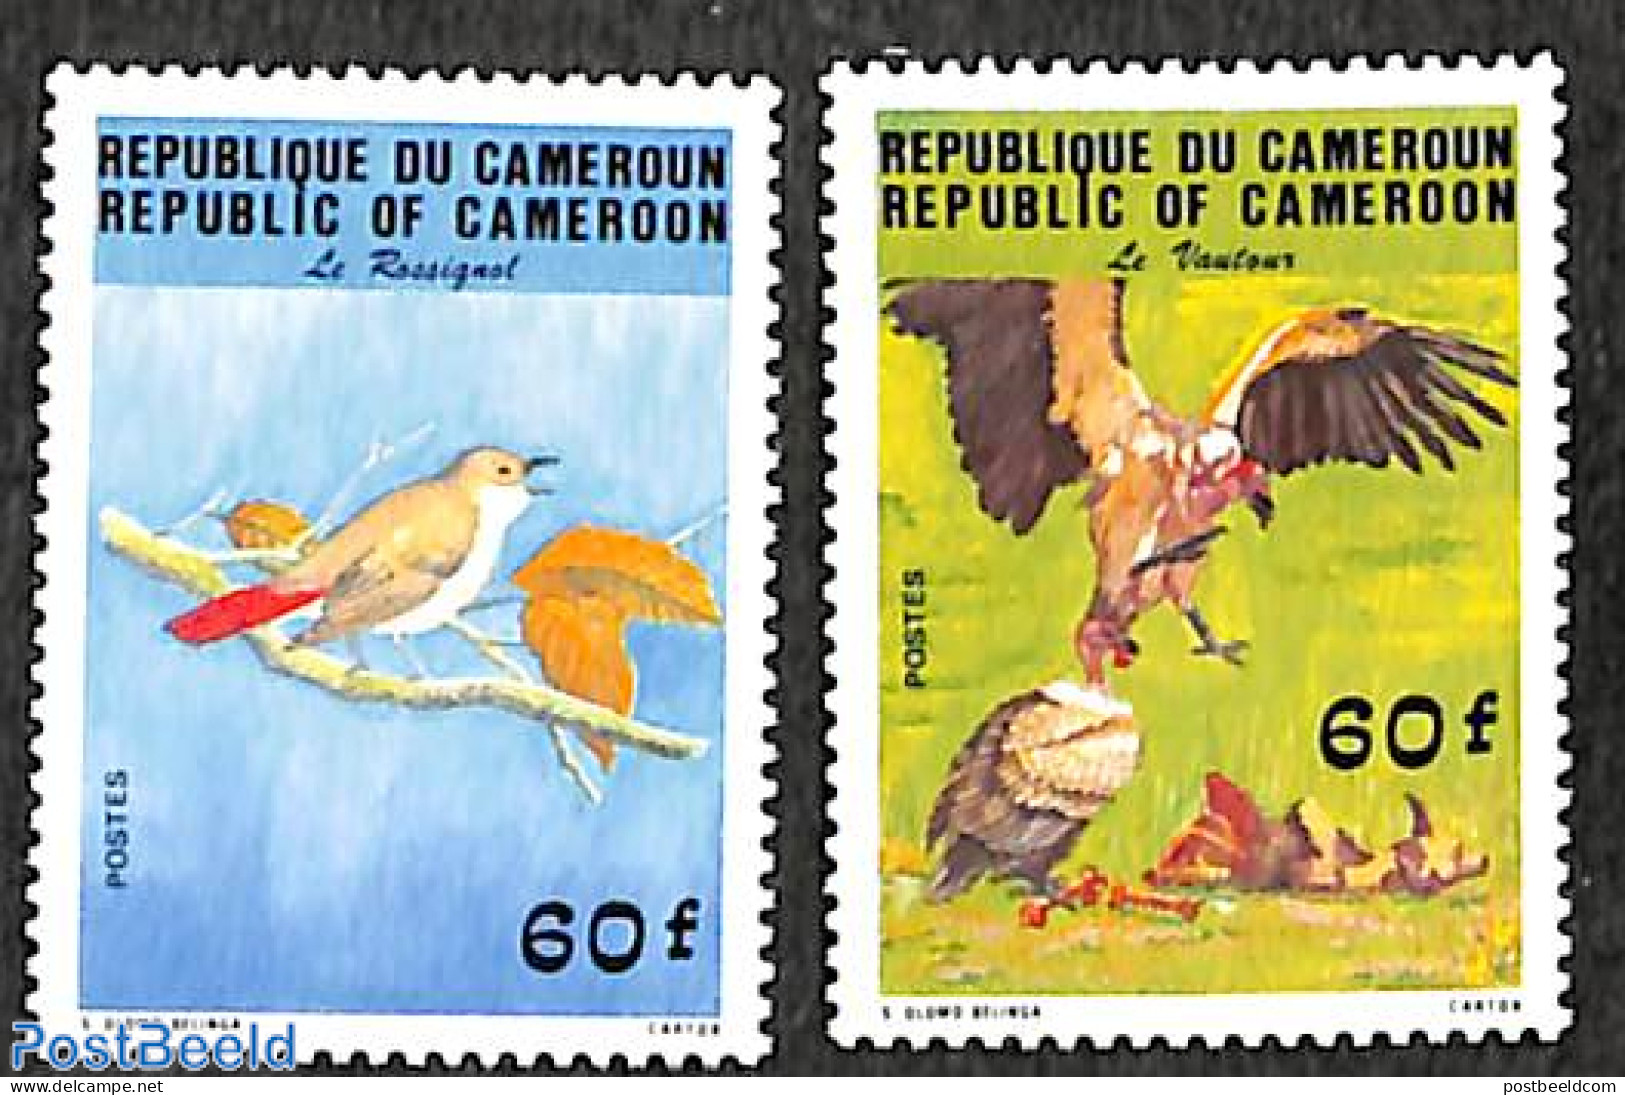 Cameroon 1984 Birds 2v, Mint NH, Nature - Birds - Kamerun (1960-...)